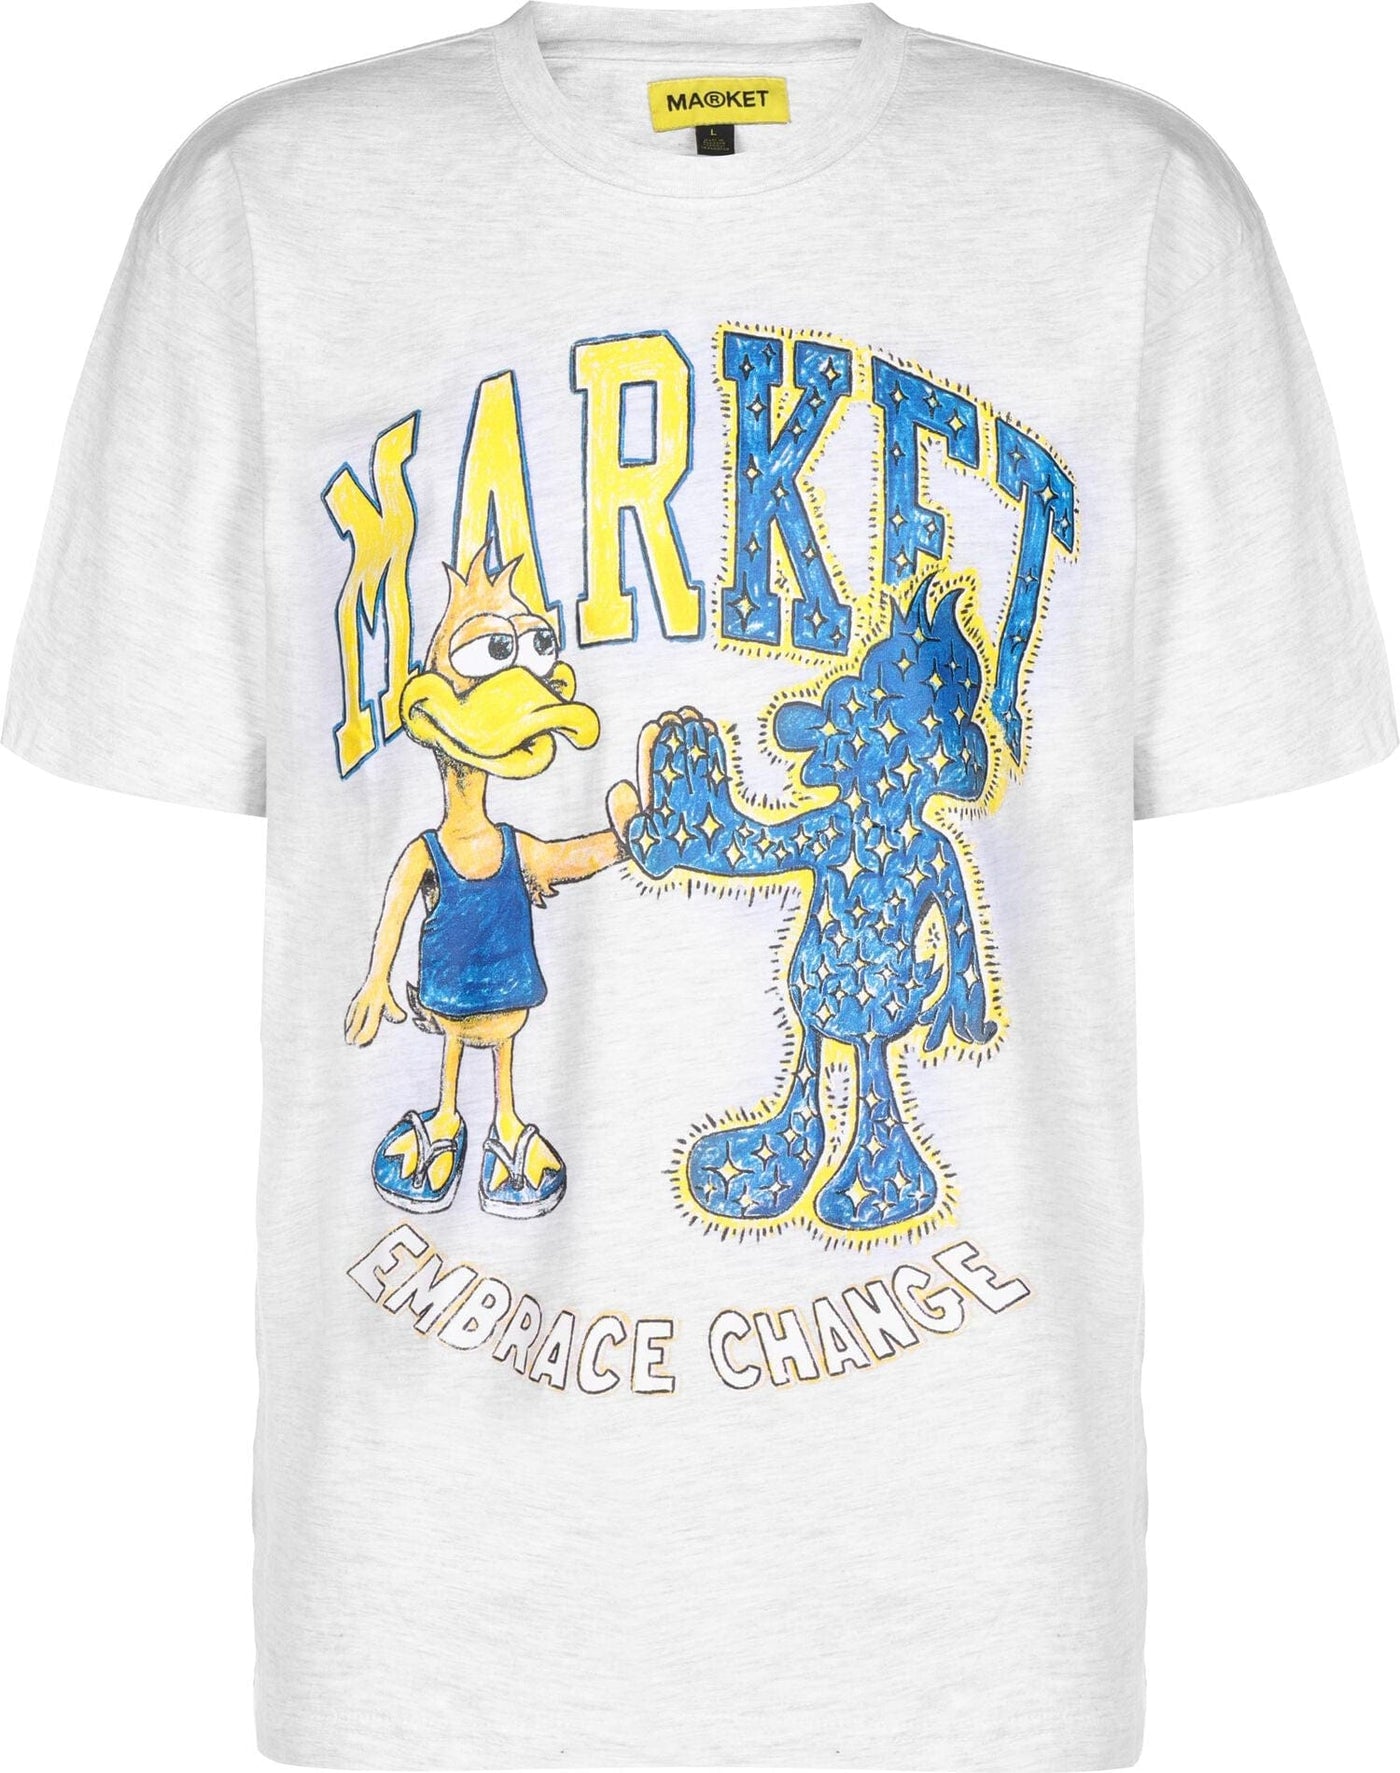 Market Dark and Light Duck T-shirt